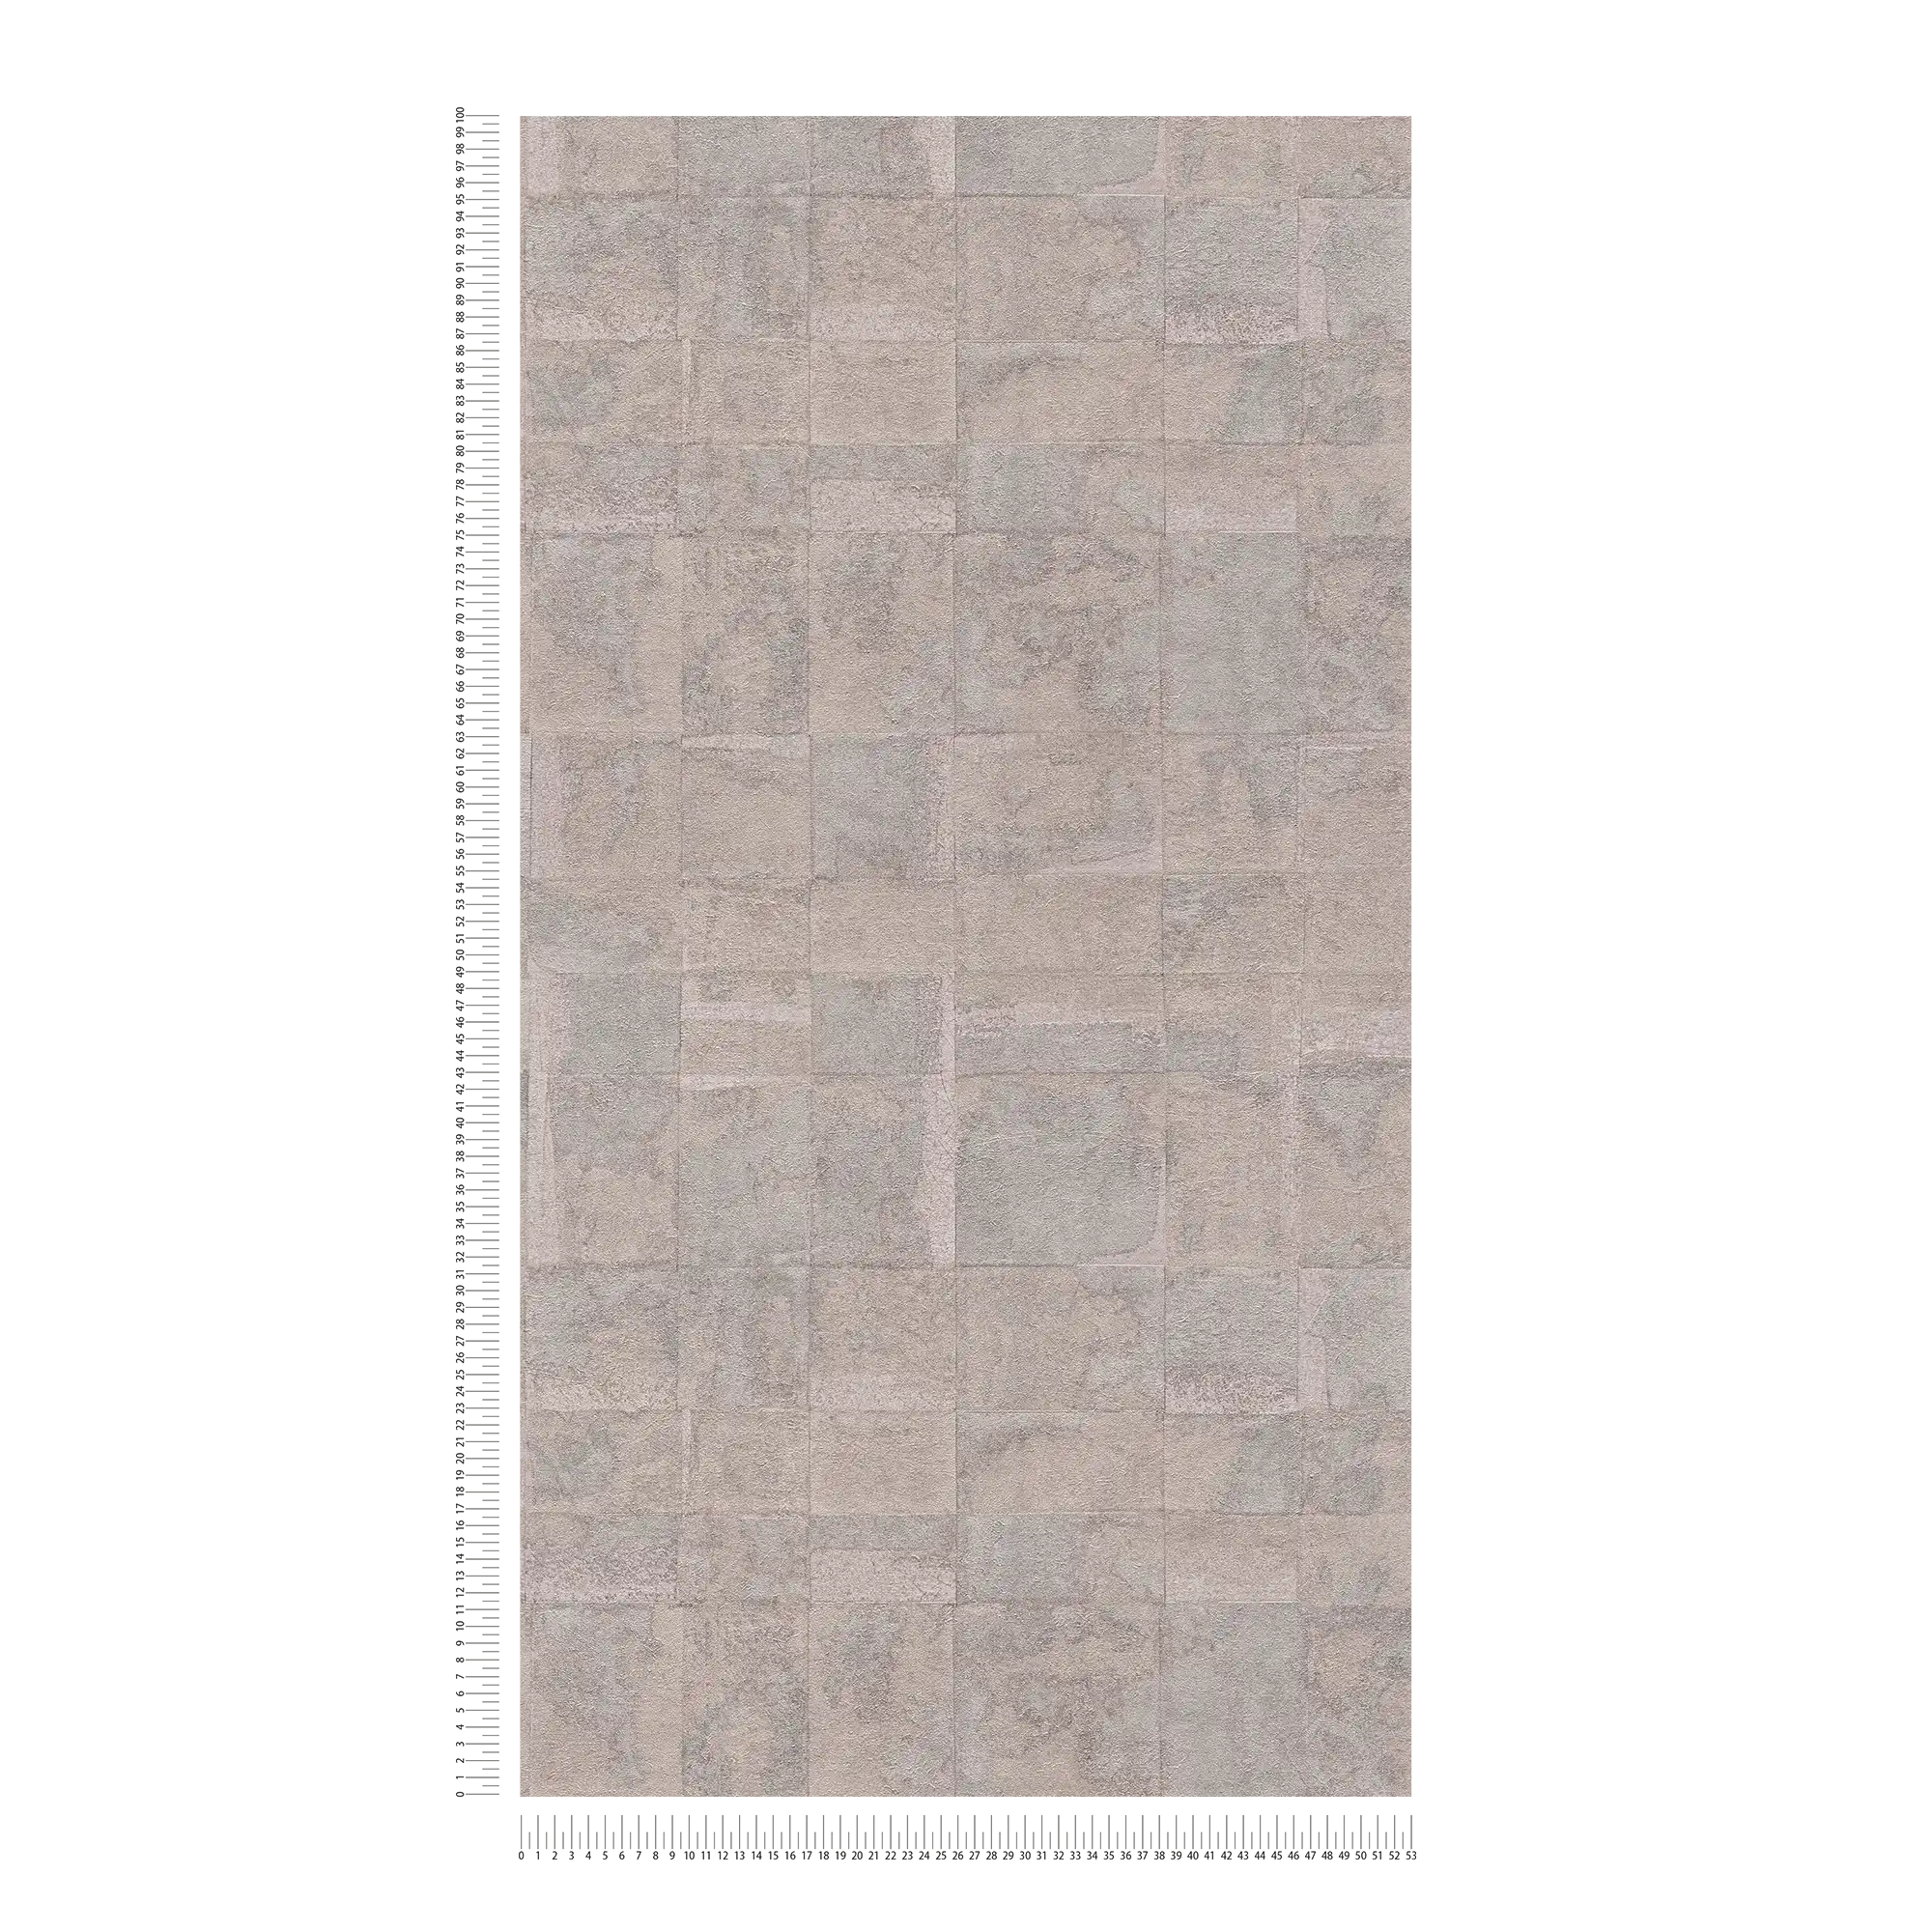             Carta da parati non tessuta con motivo a piastrelle ed effetto patina - beige, grigio
        